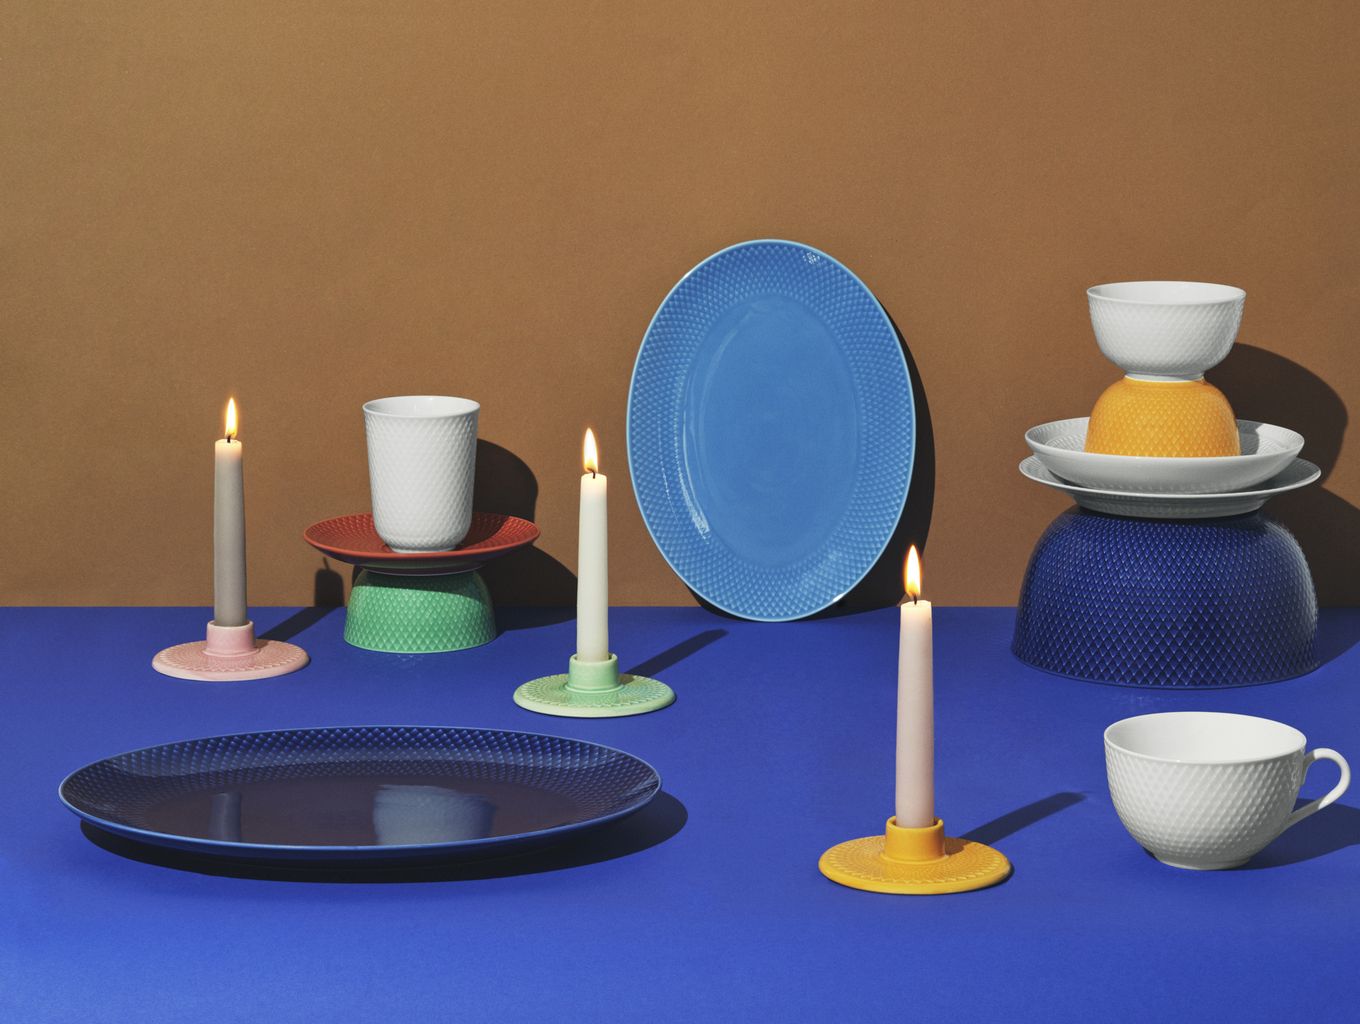 Lyngby Porcelæn Rhombe Color Oval serveringsplade 35x26,5, mørkeblå